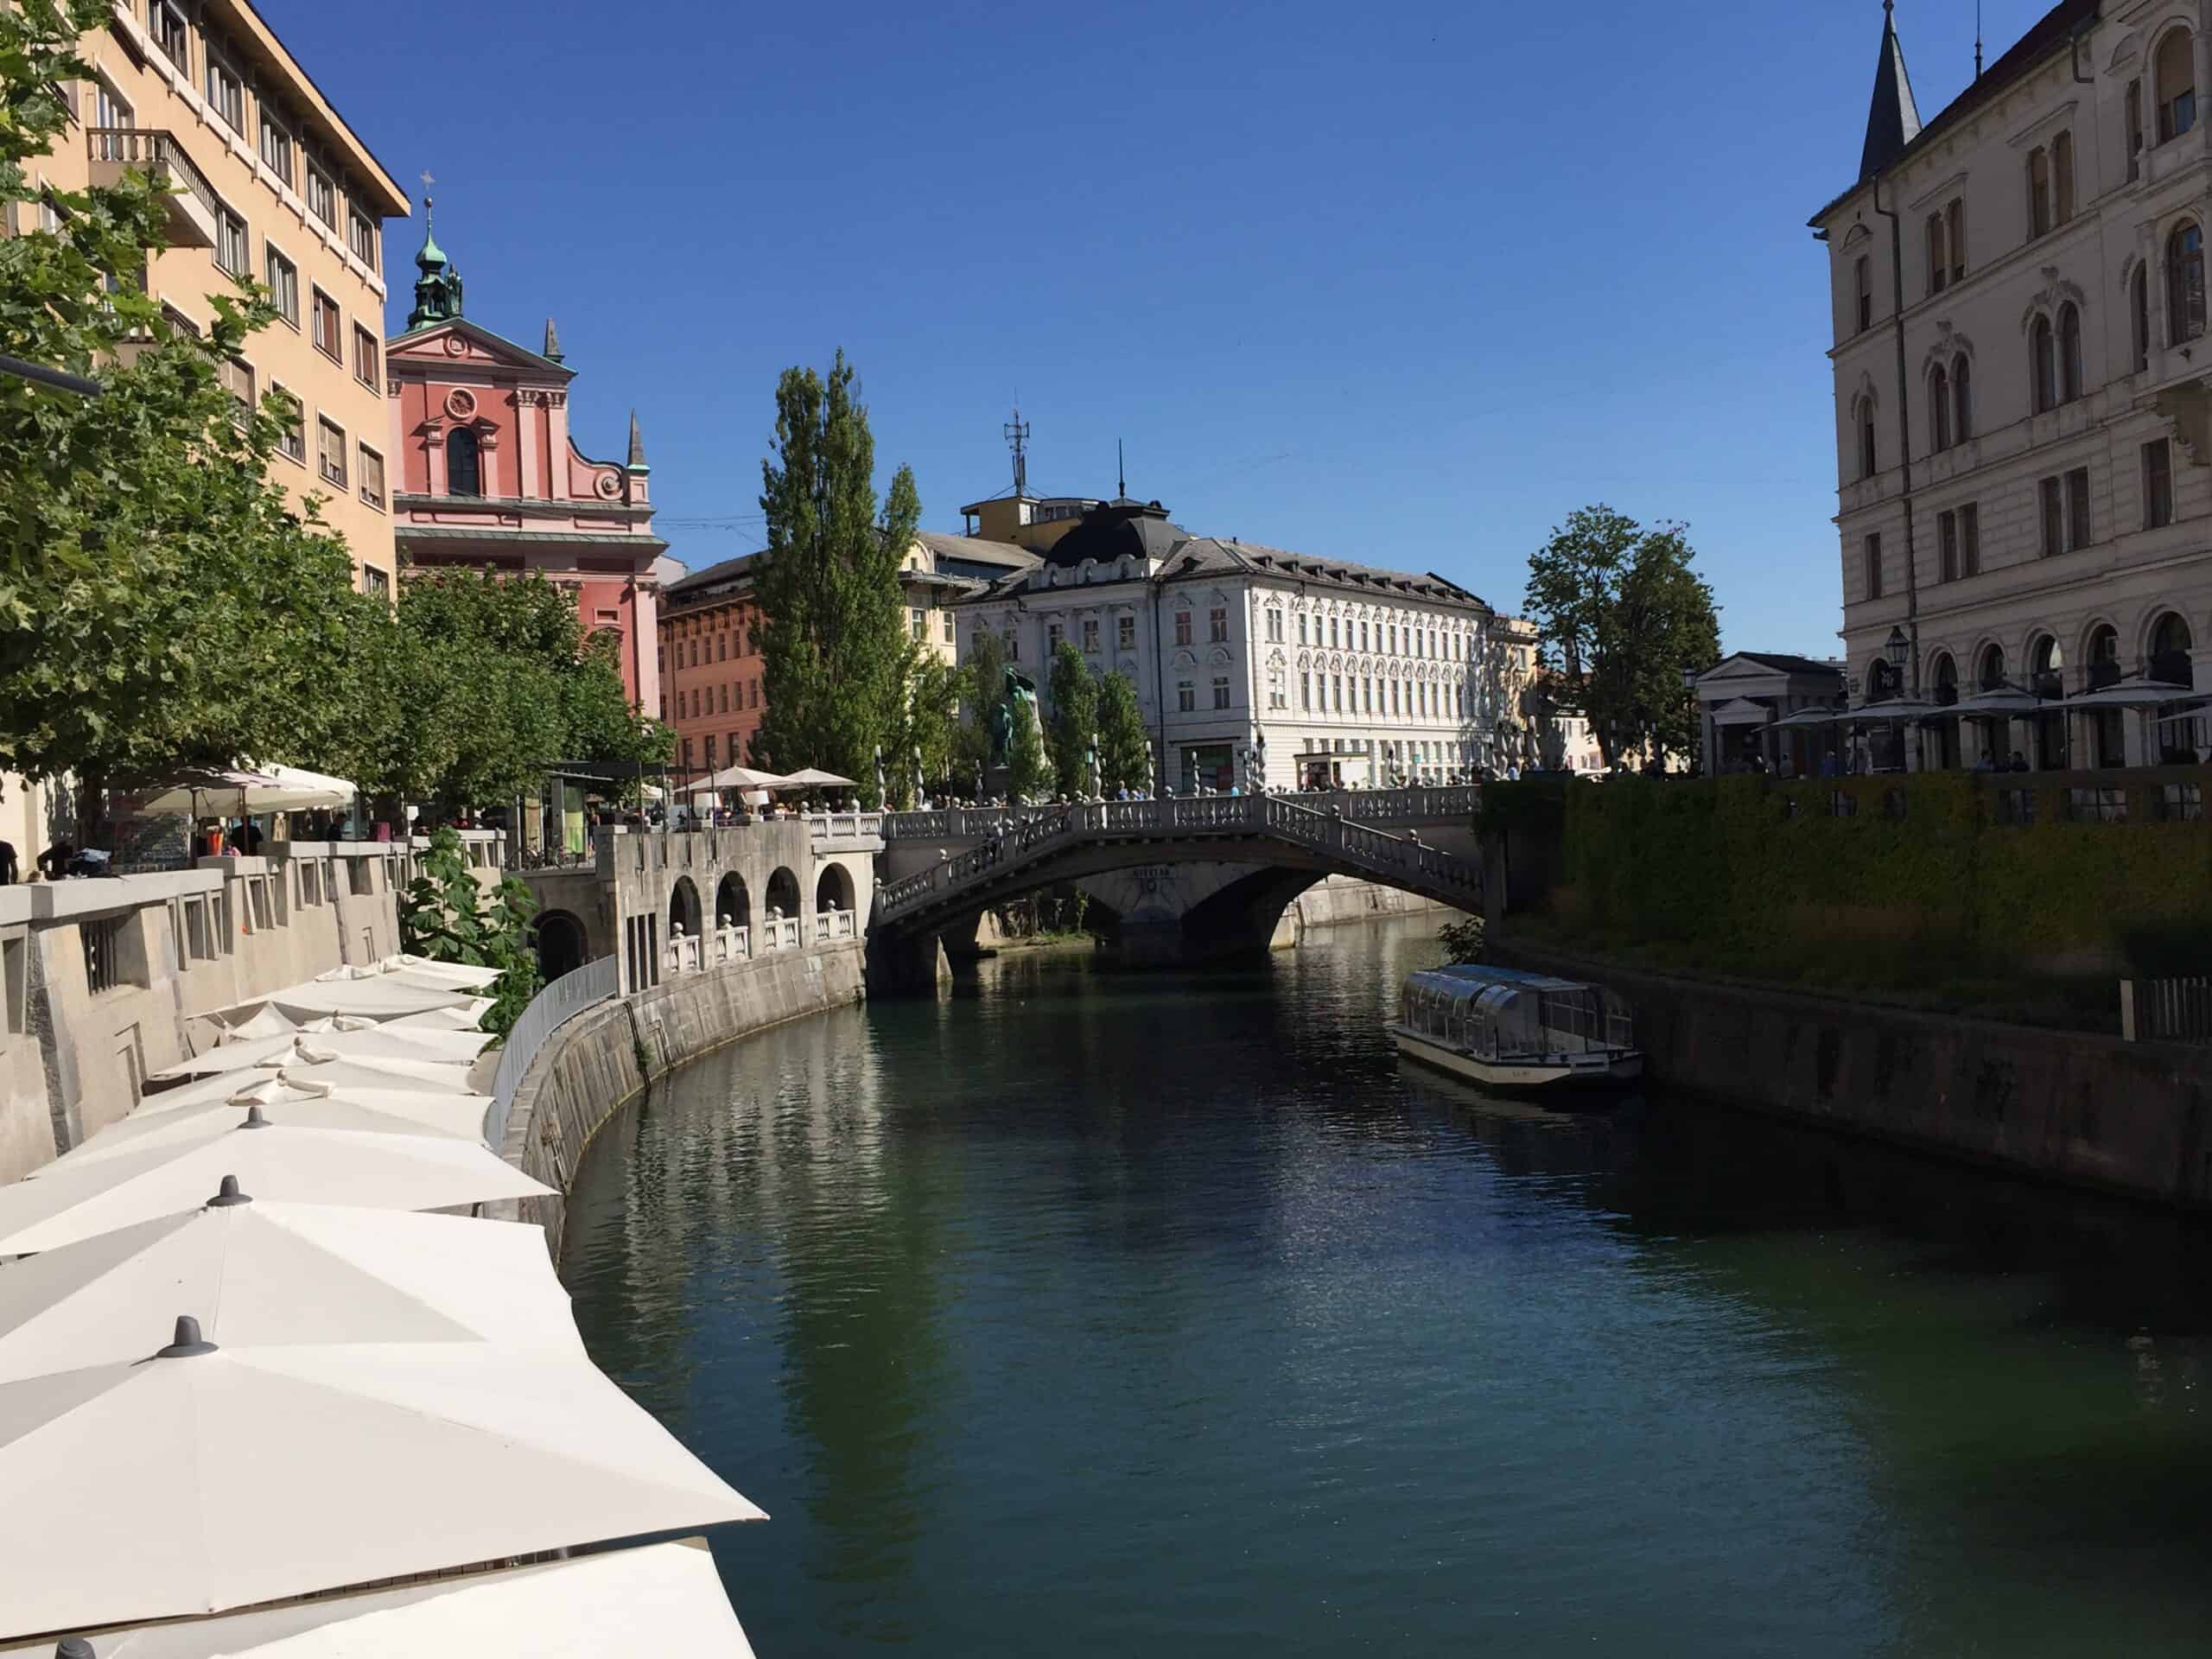 Ljubljana, between river and bridges